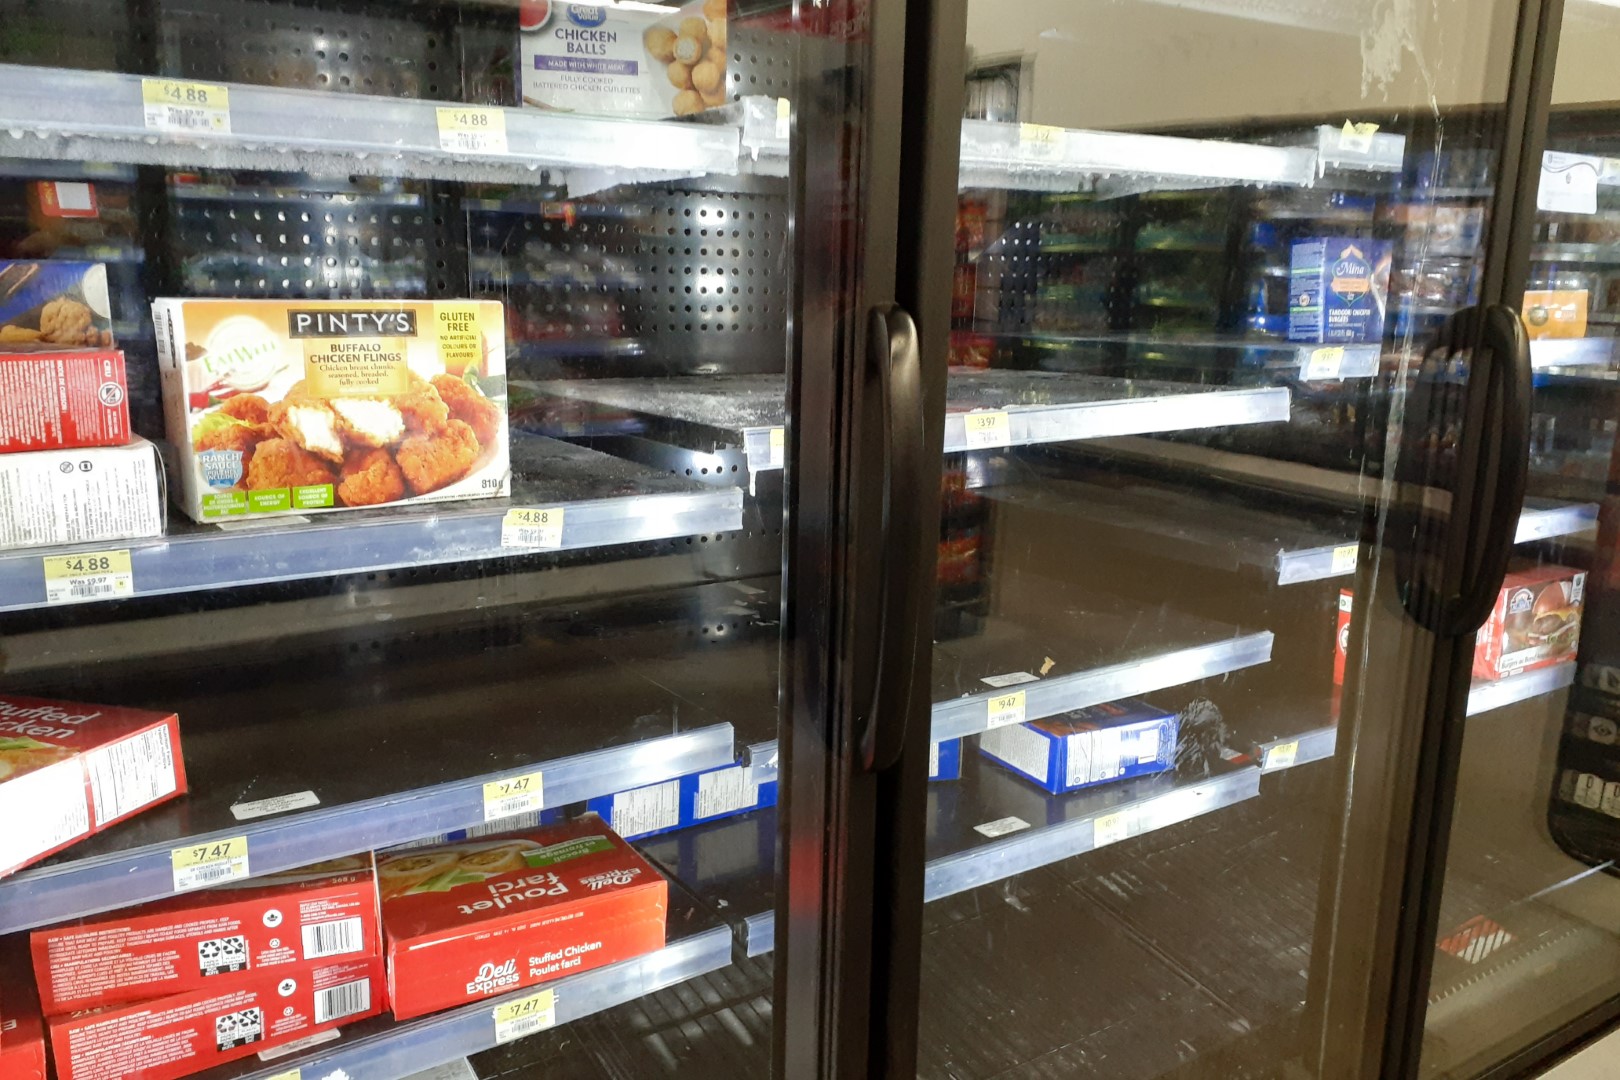 Empty shelves at Walmart, Ottawa, September 2022